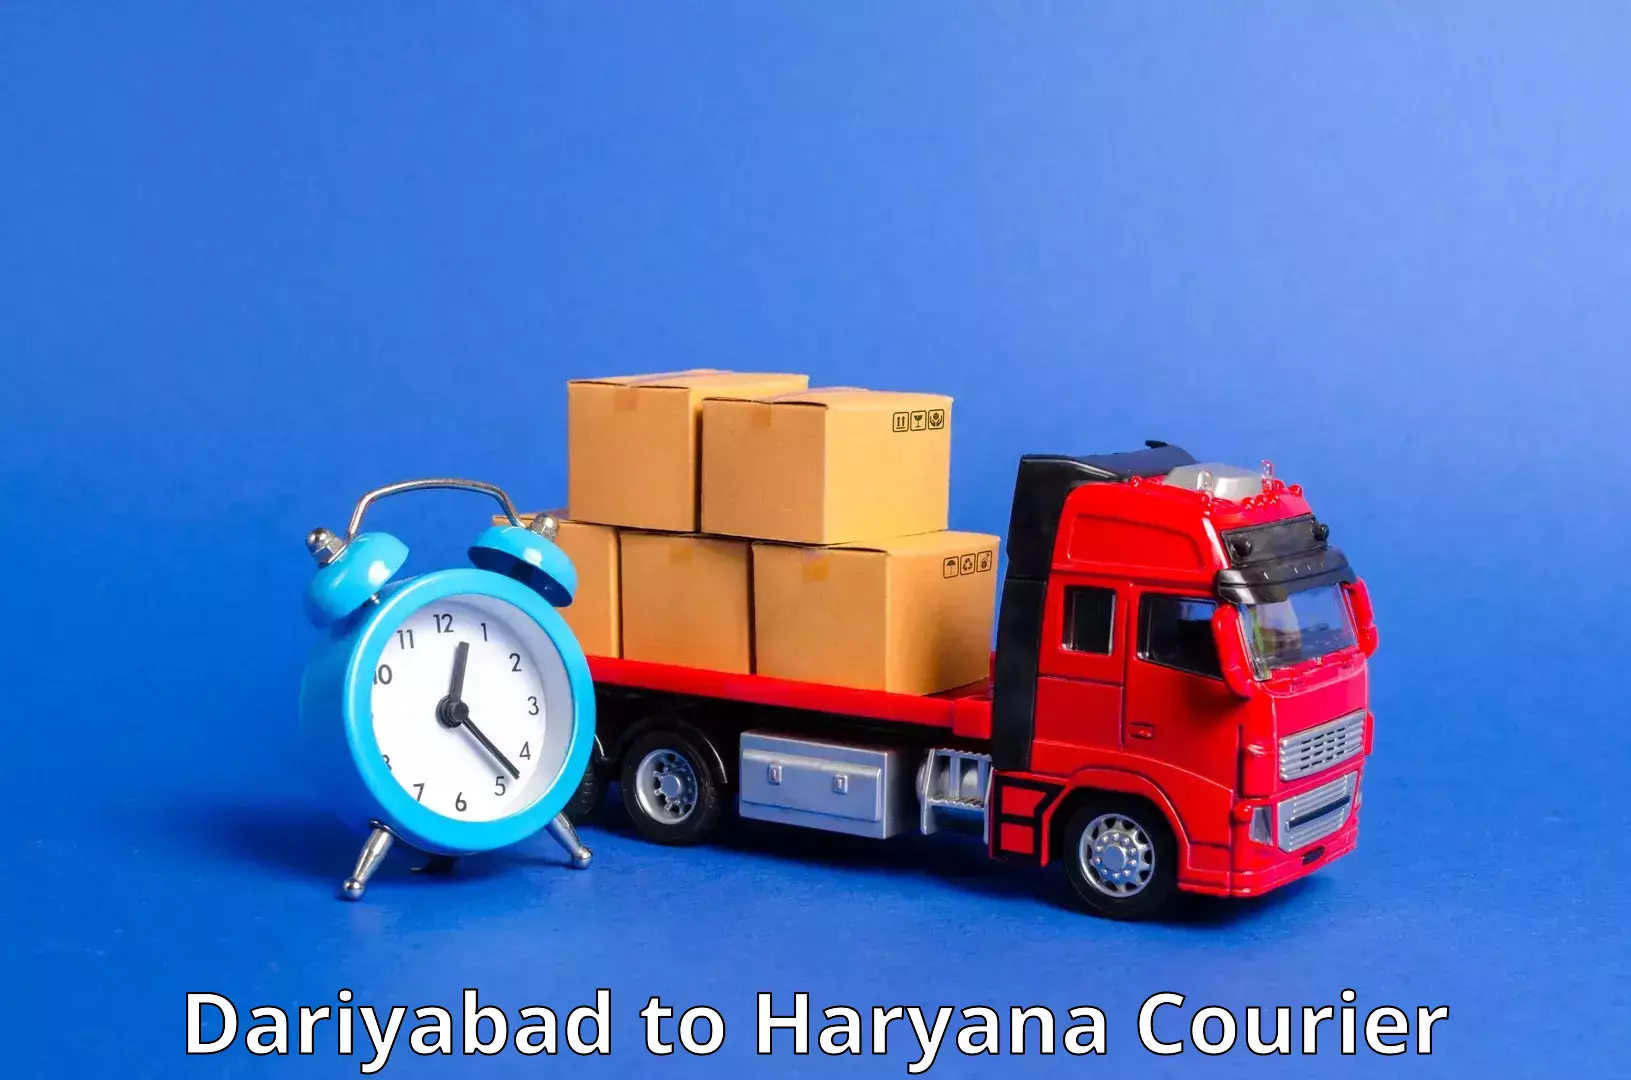 Air courier services Dariyabad to Chaudhary Charan Singh Haryana Agricultural University Hisar